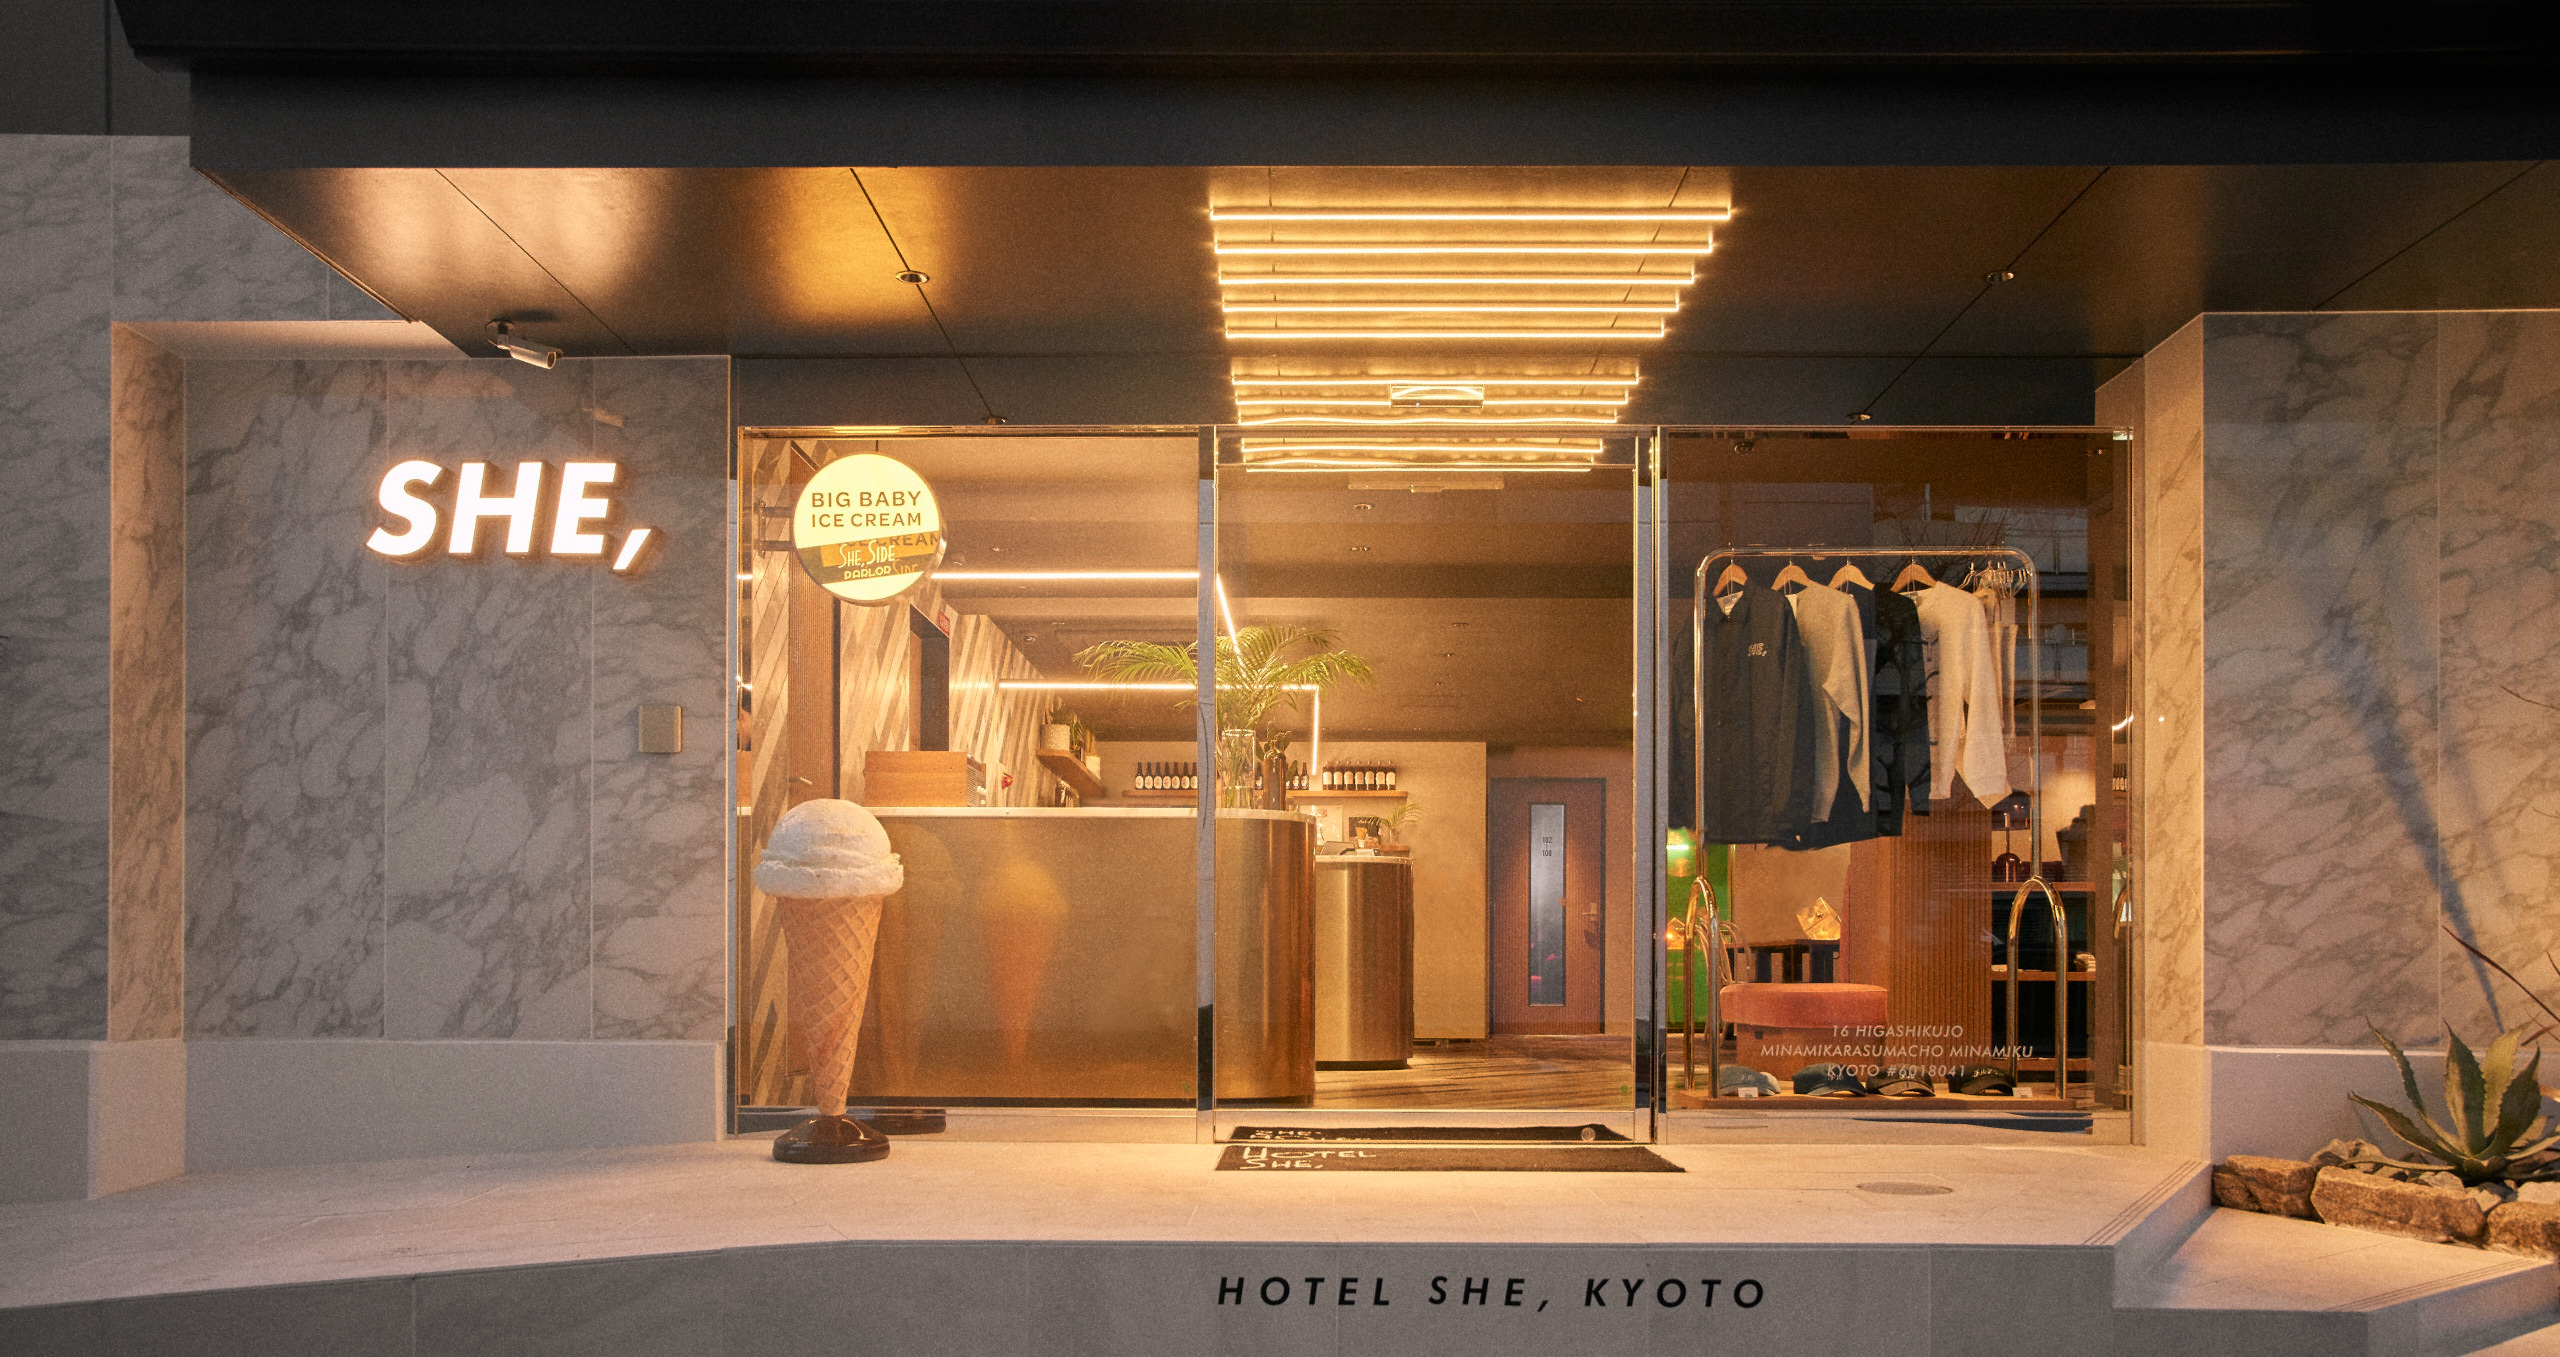 HOTEL SHE, KYOTO image